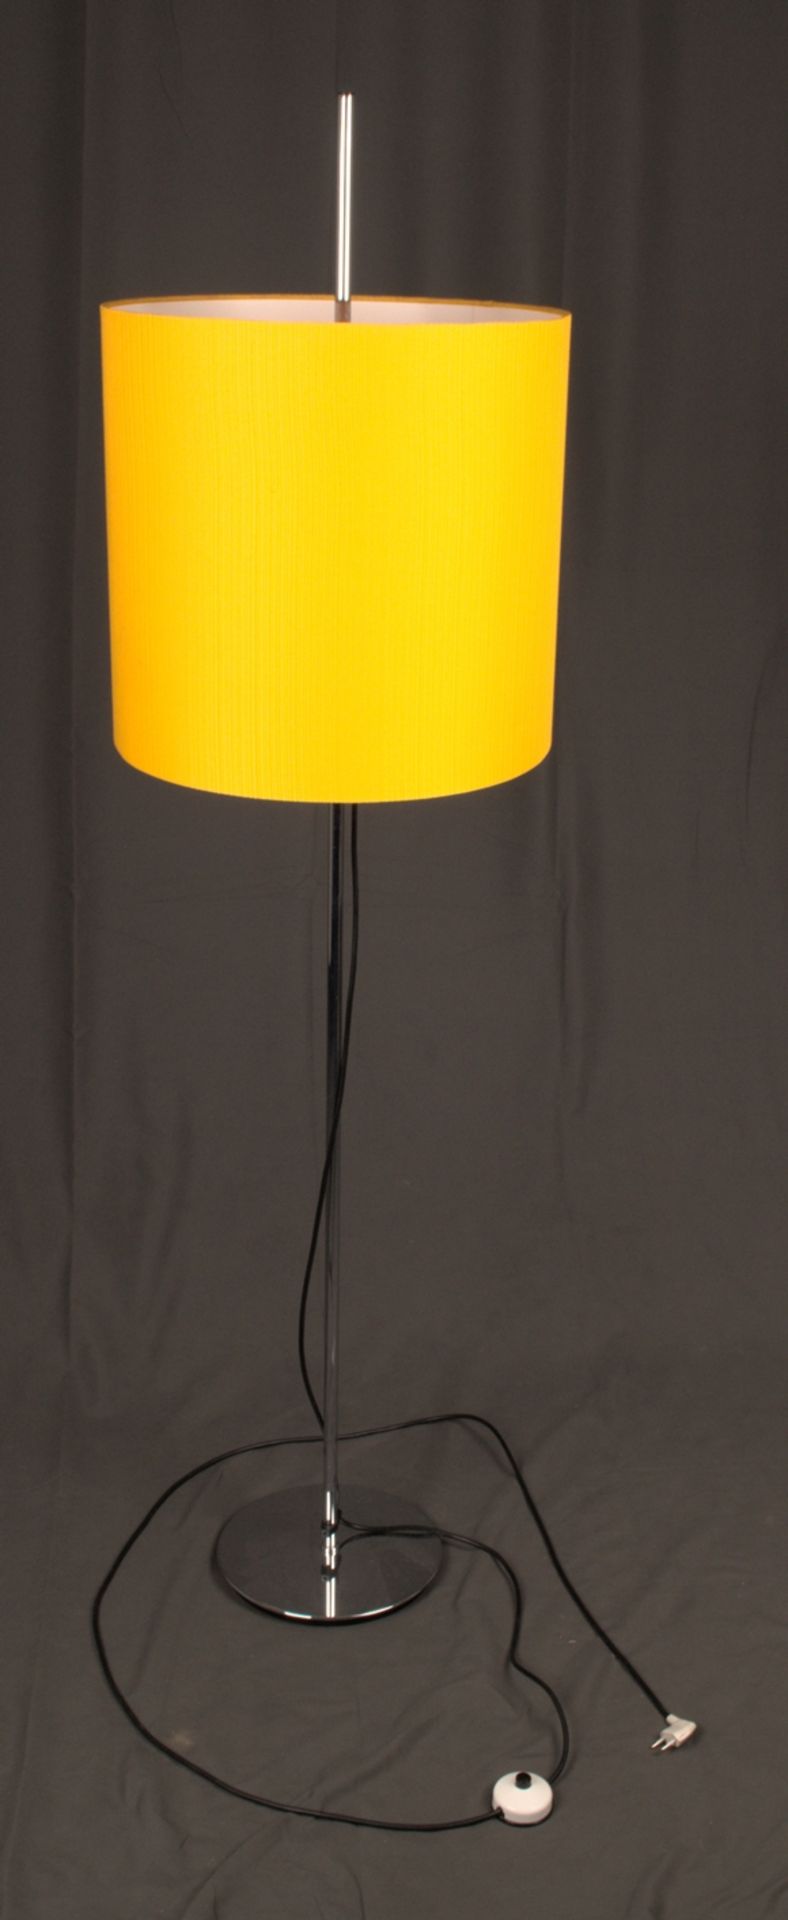 Klassische Stehlampe, höhenverstellbarer, mit Stoff bespannter Lampenschirm auf/an verchromtem